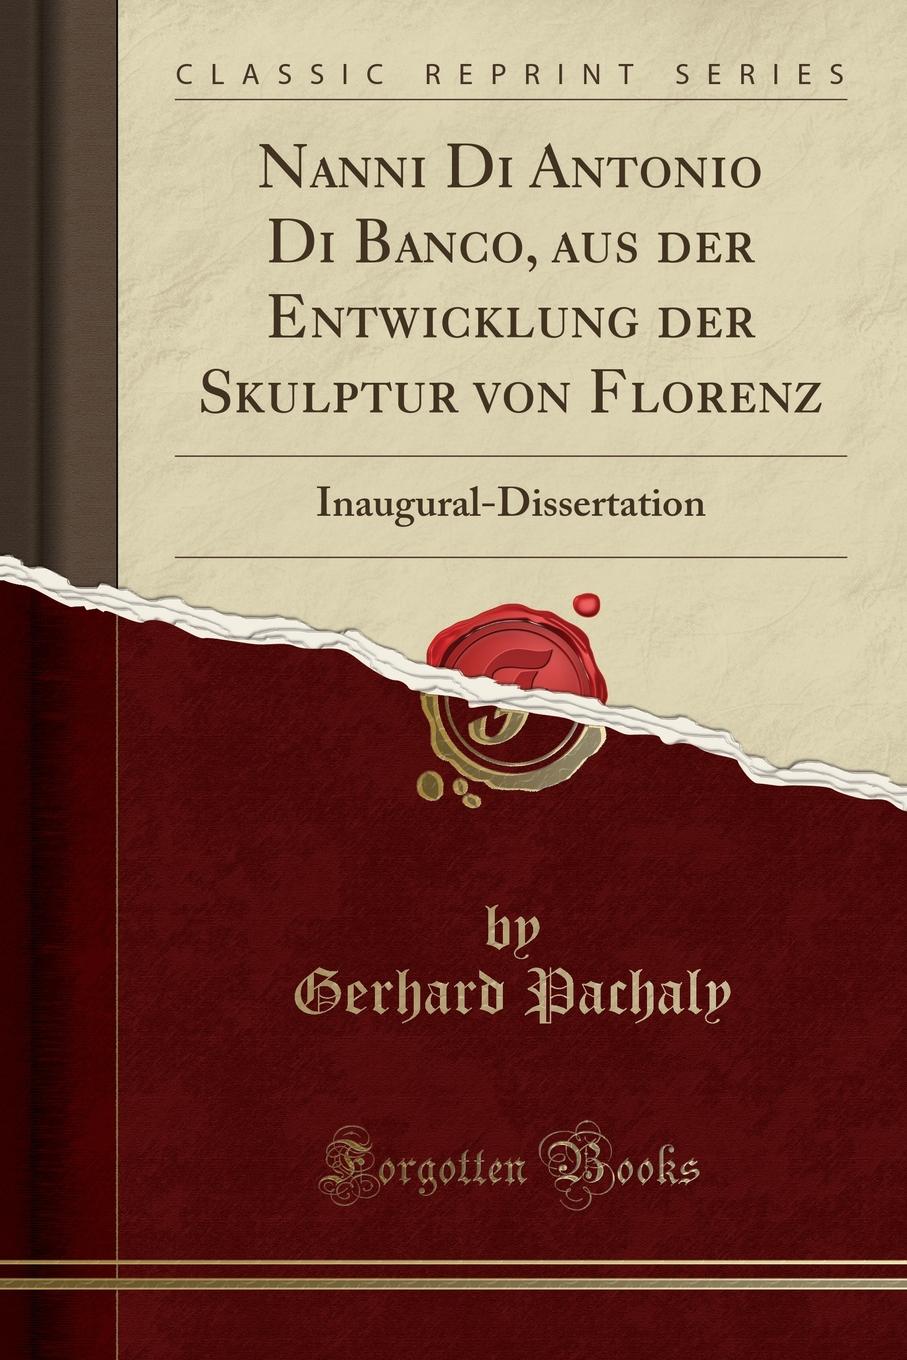 Gerhard Pachaly Nanni Di Antonio Di Banco, aus der Entwicklung der Skulptur von Florenz. Inaugural-Dissertation (Classic Reprint)